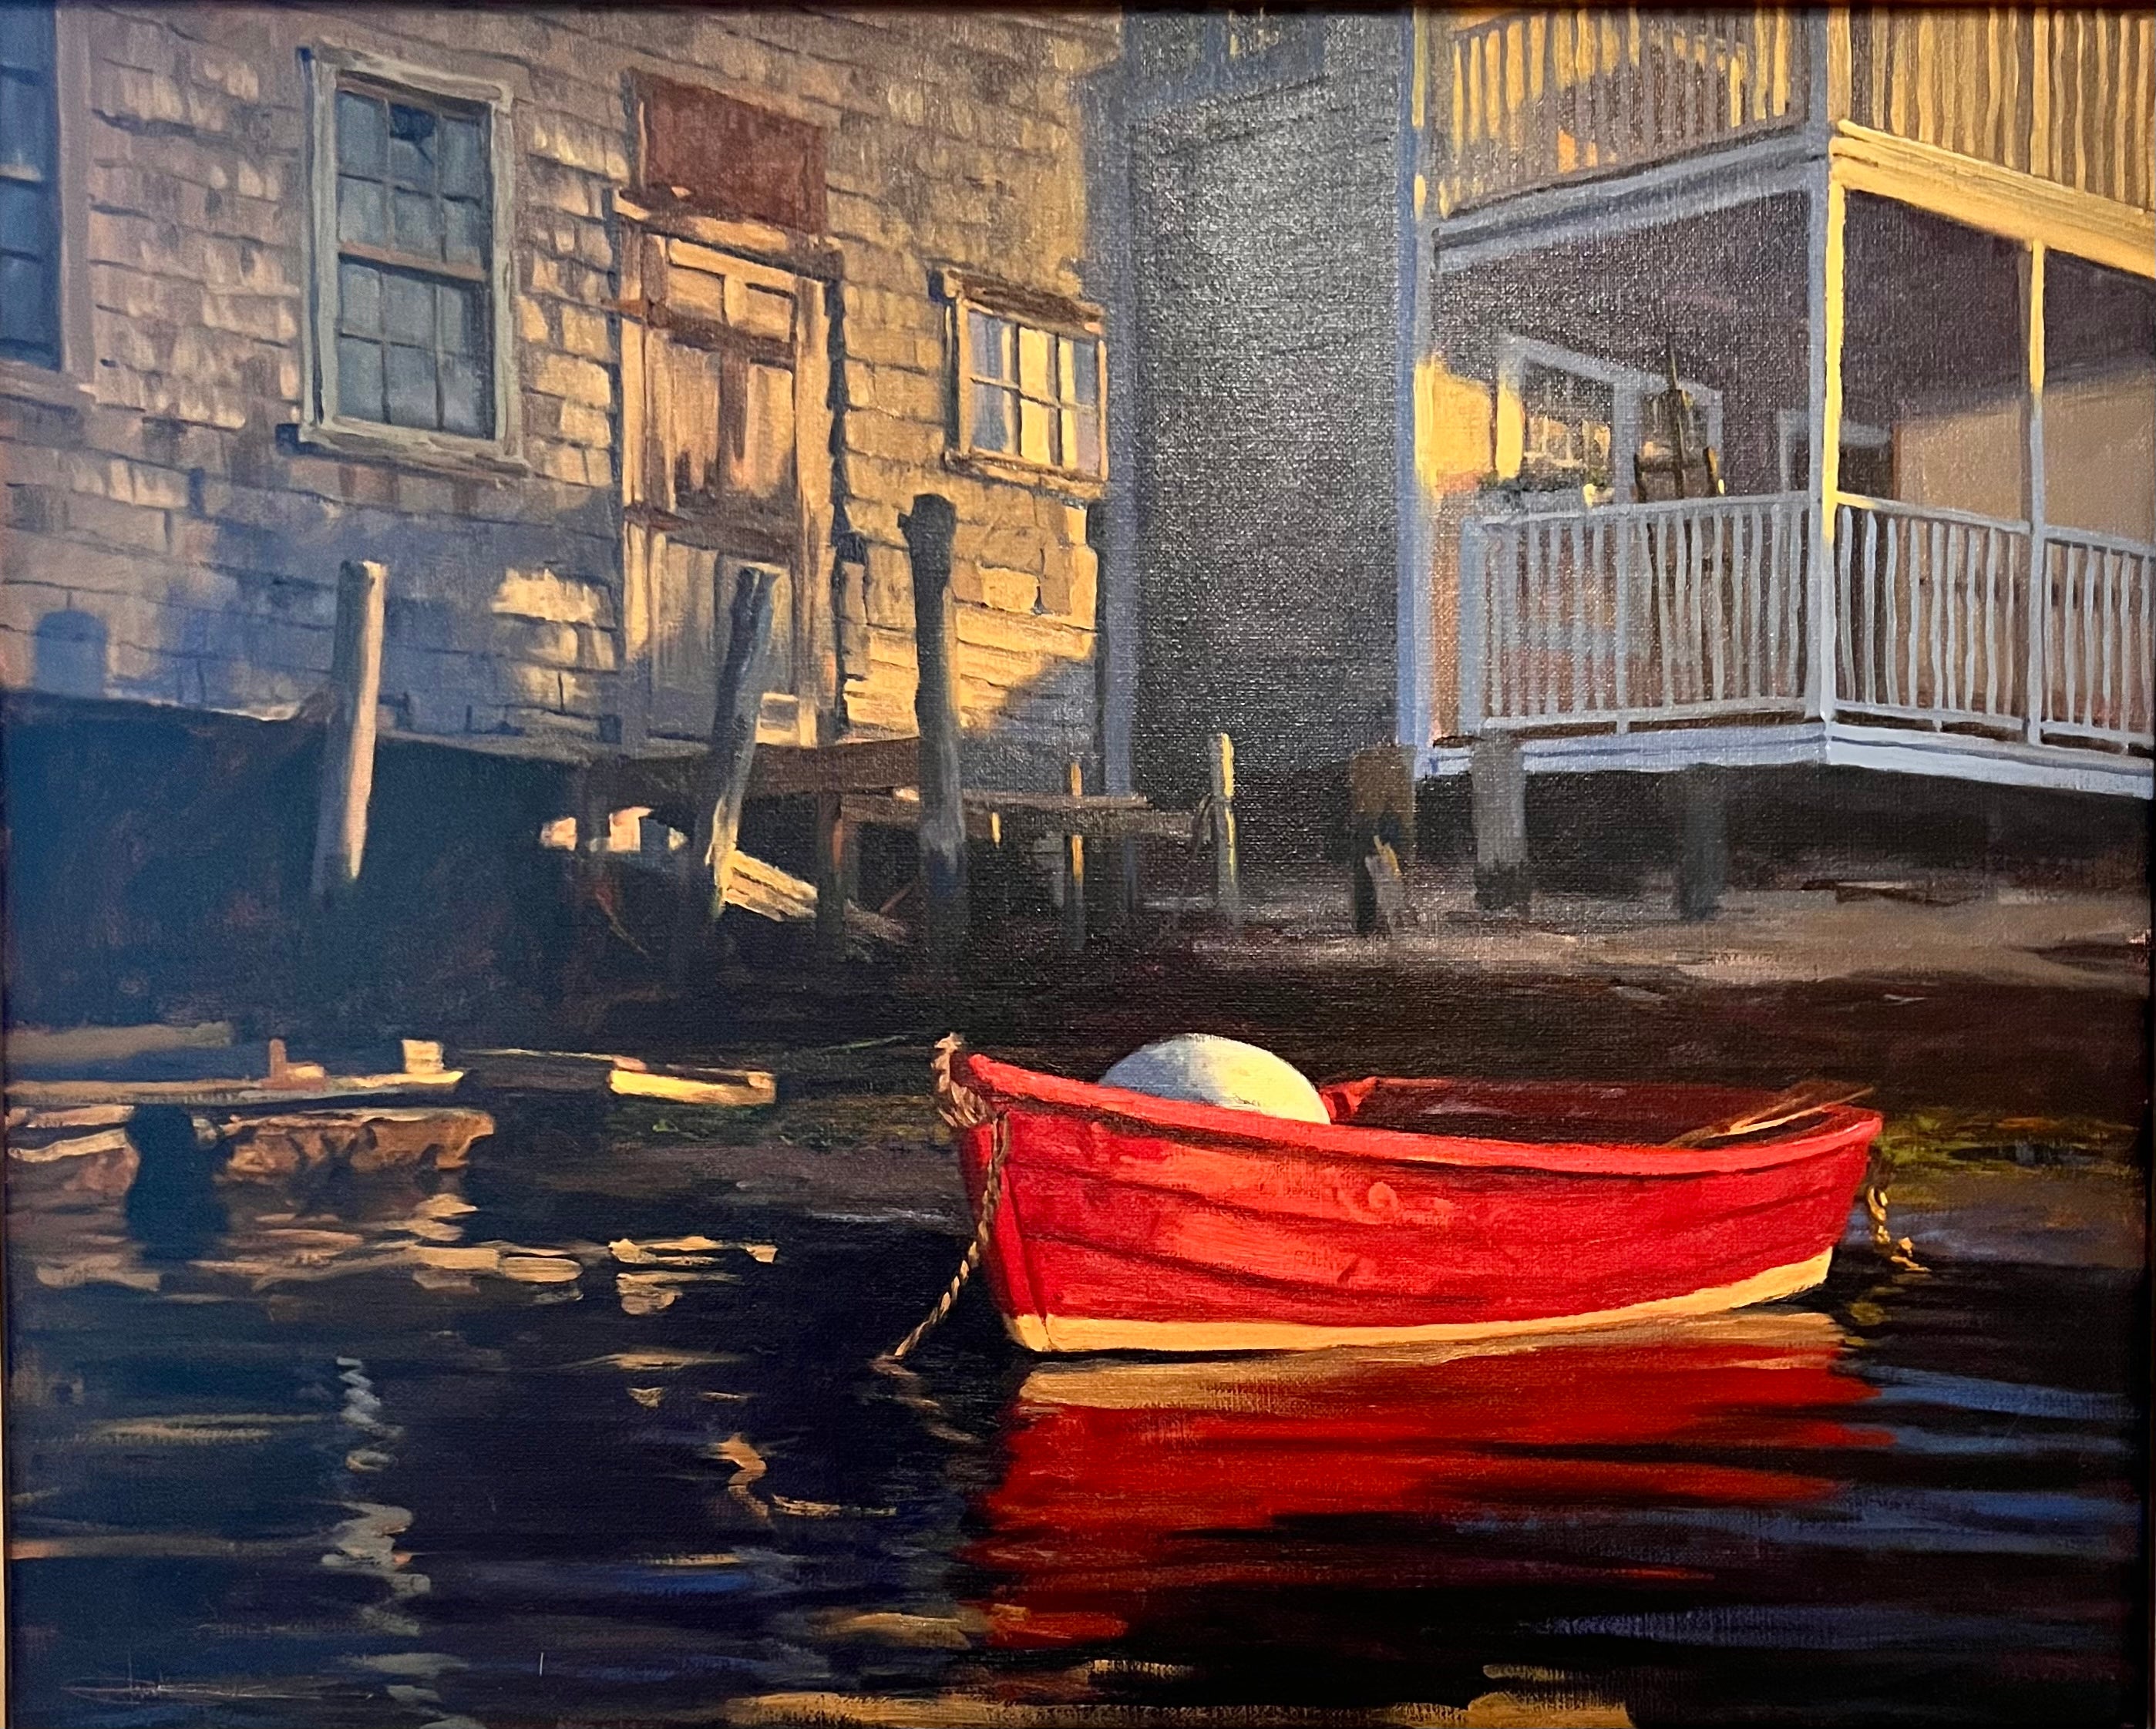 Louis Guarnaccia “Easy Street Boat Basin” Nantucket, Oil on Linen, 2001 For Sale